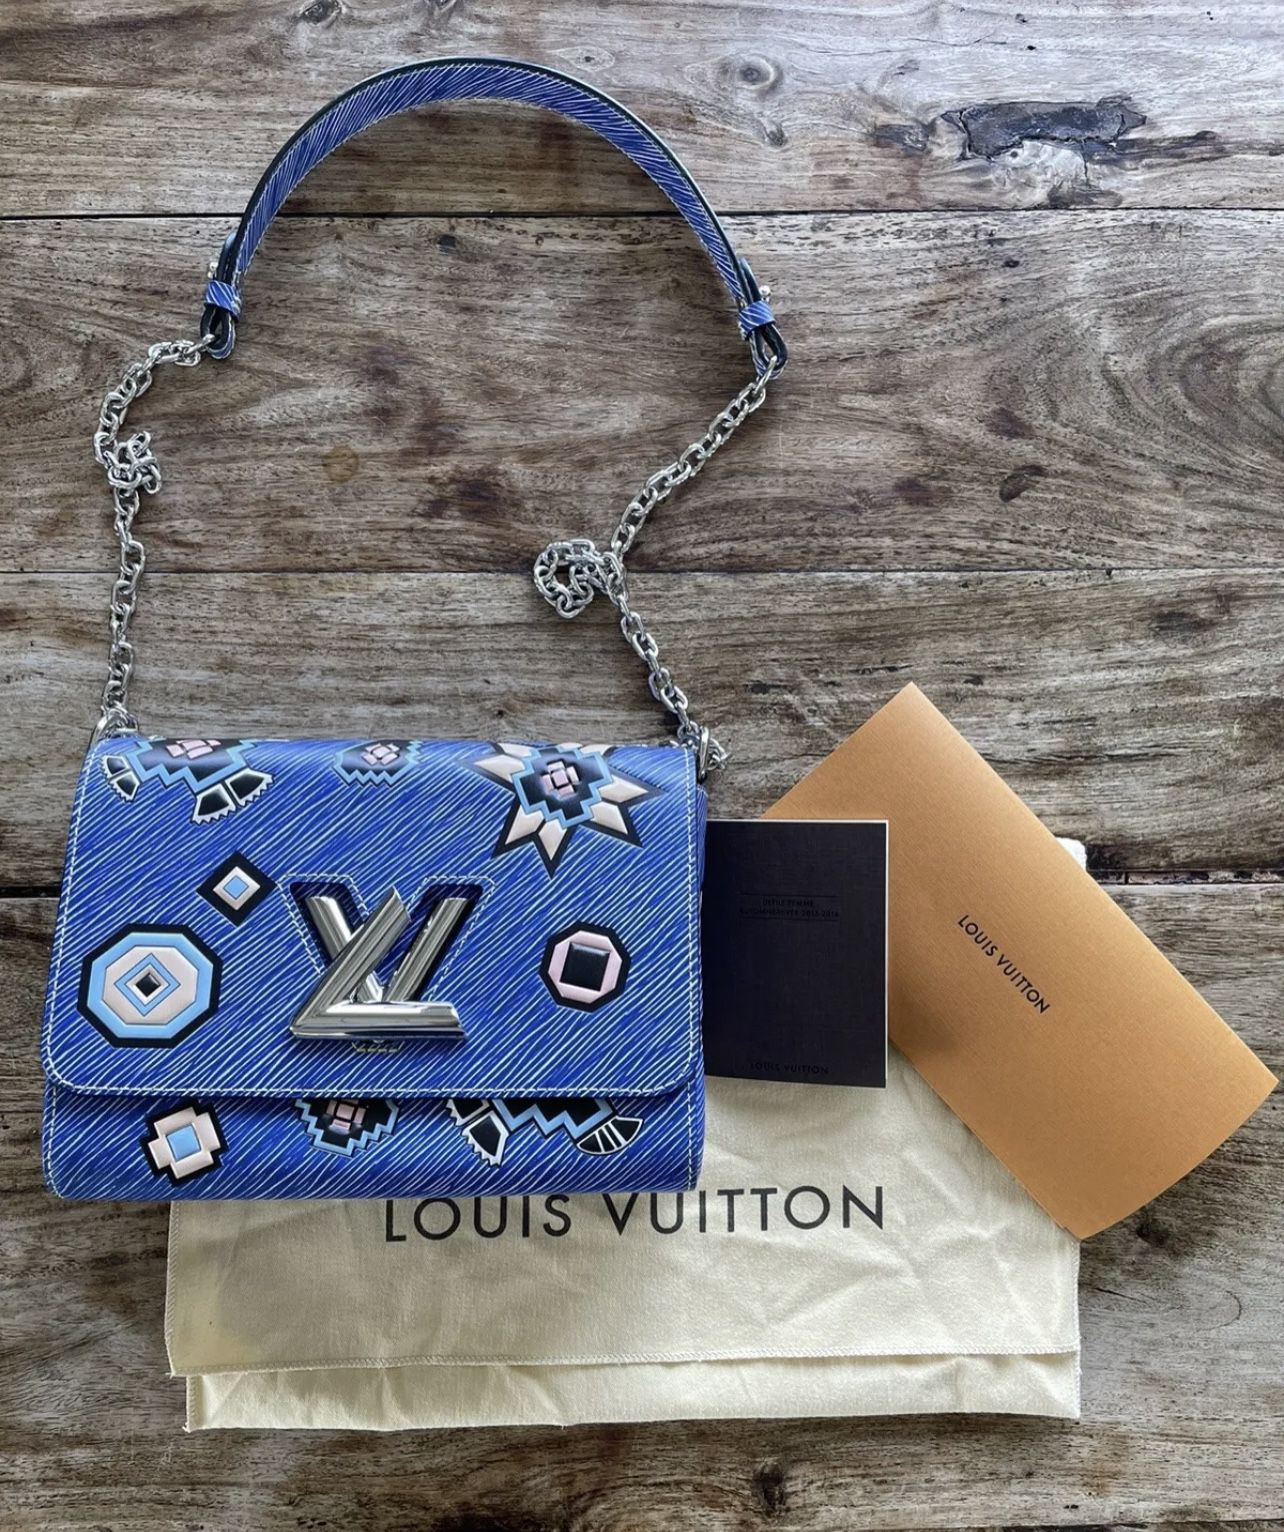 Twist MM Louis Vuitton for Sale in Ind Crk Vlg, FL - OfferUp